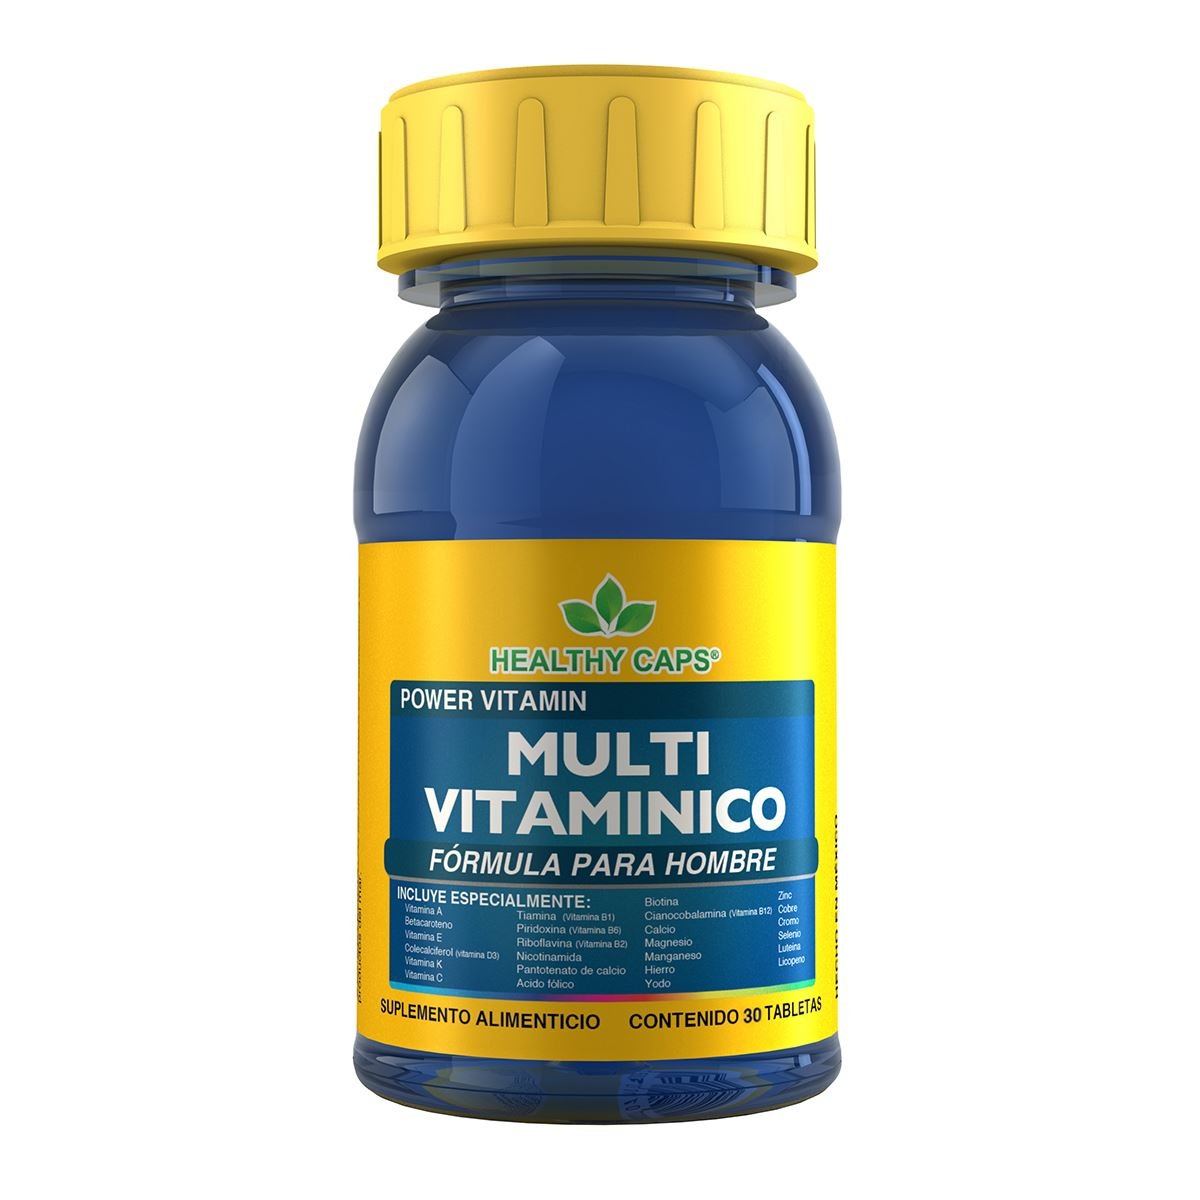 Multivitaminico Hom 30 Tab Healthy Caps - Multivitaminico